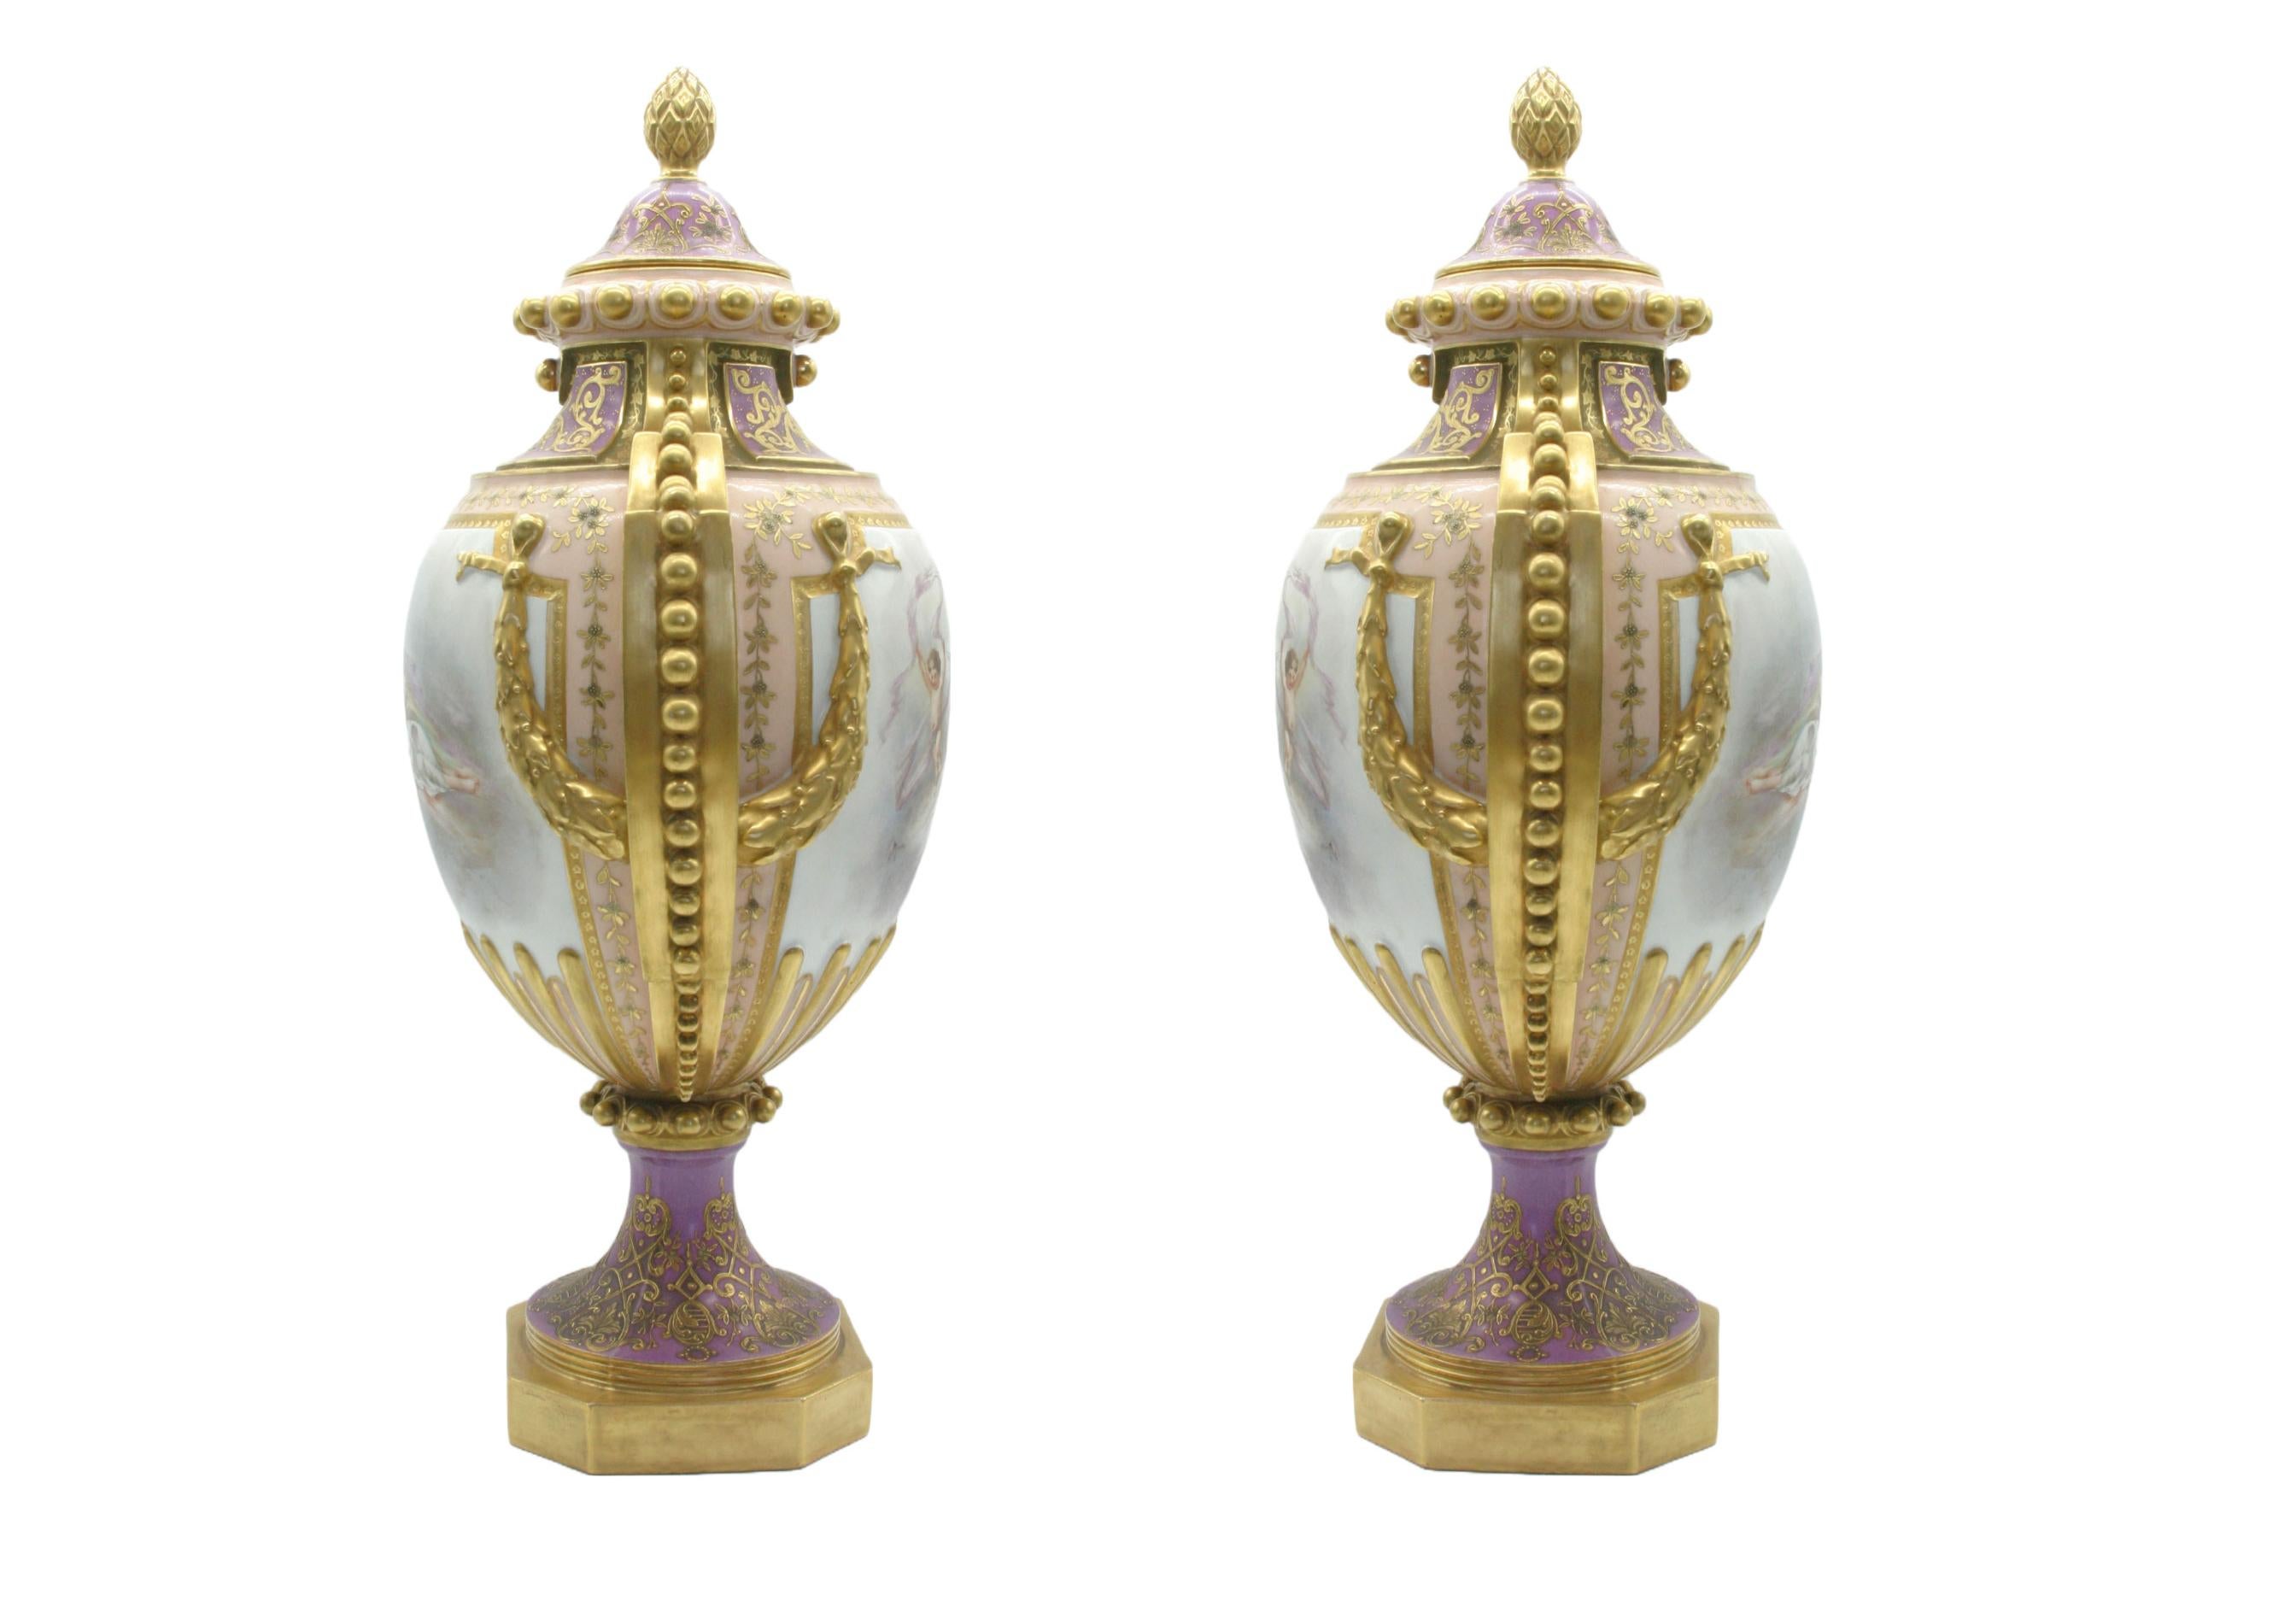 Grande paire d'urnes / vases décoratifs en porcelaine couverte, peints à la main et dorés, du début du 19ème siècle. Chaque urne est ornée d'une scène peinte à l'extérieur et de poignées latérales en or doré. Chacune est signée de la marque pseudo